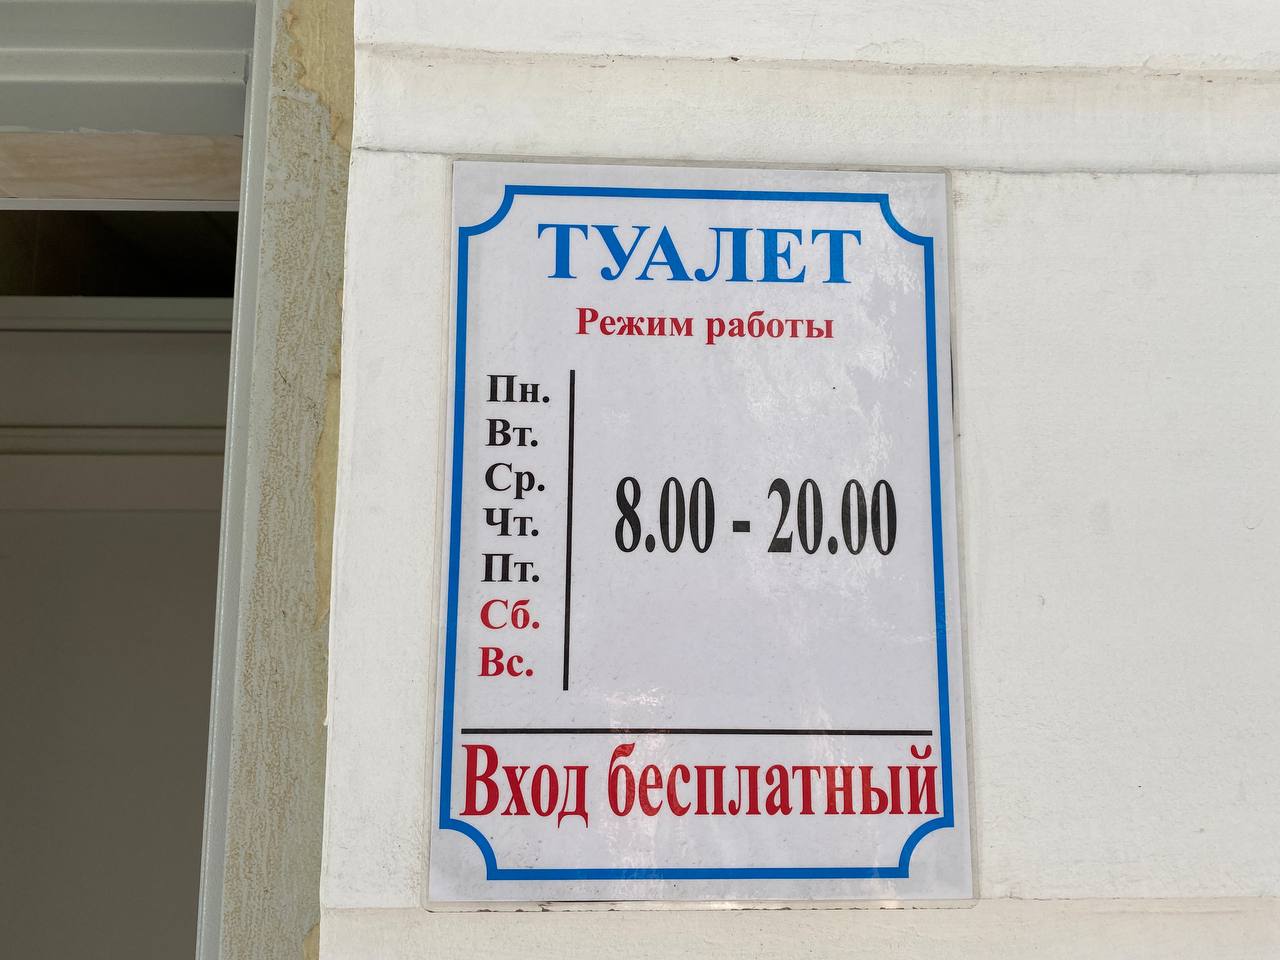 ГБУ «Парки и скверы» прекратило обслуживание туалетов в Севастополе